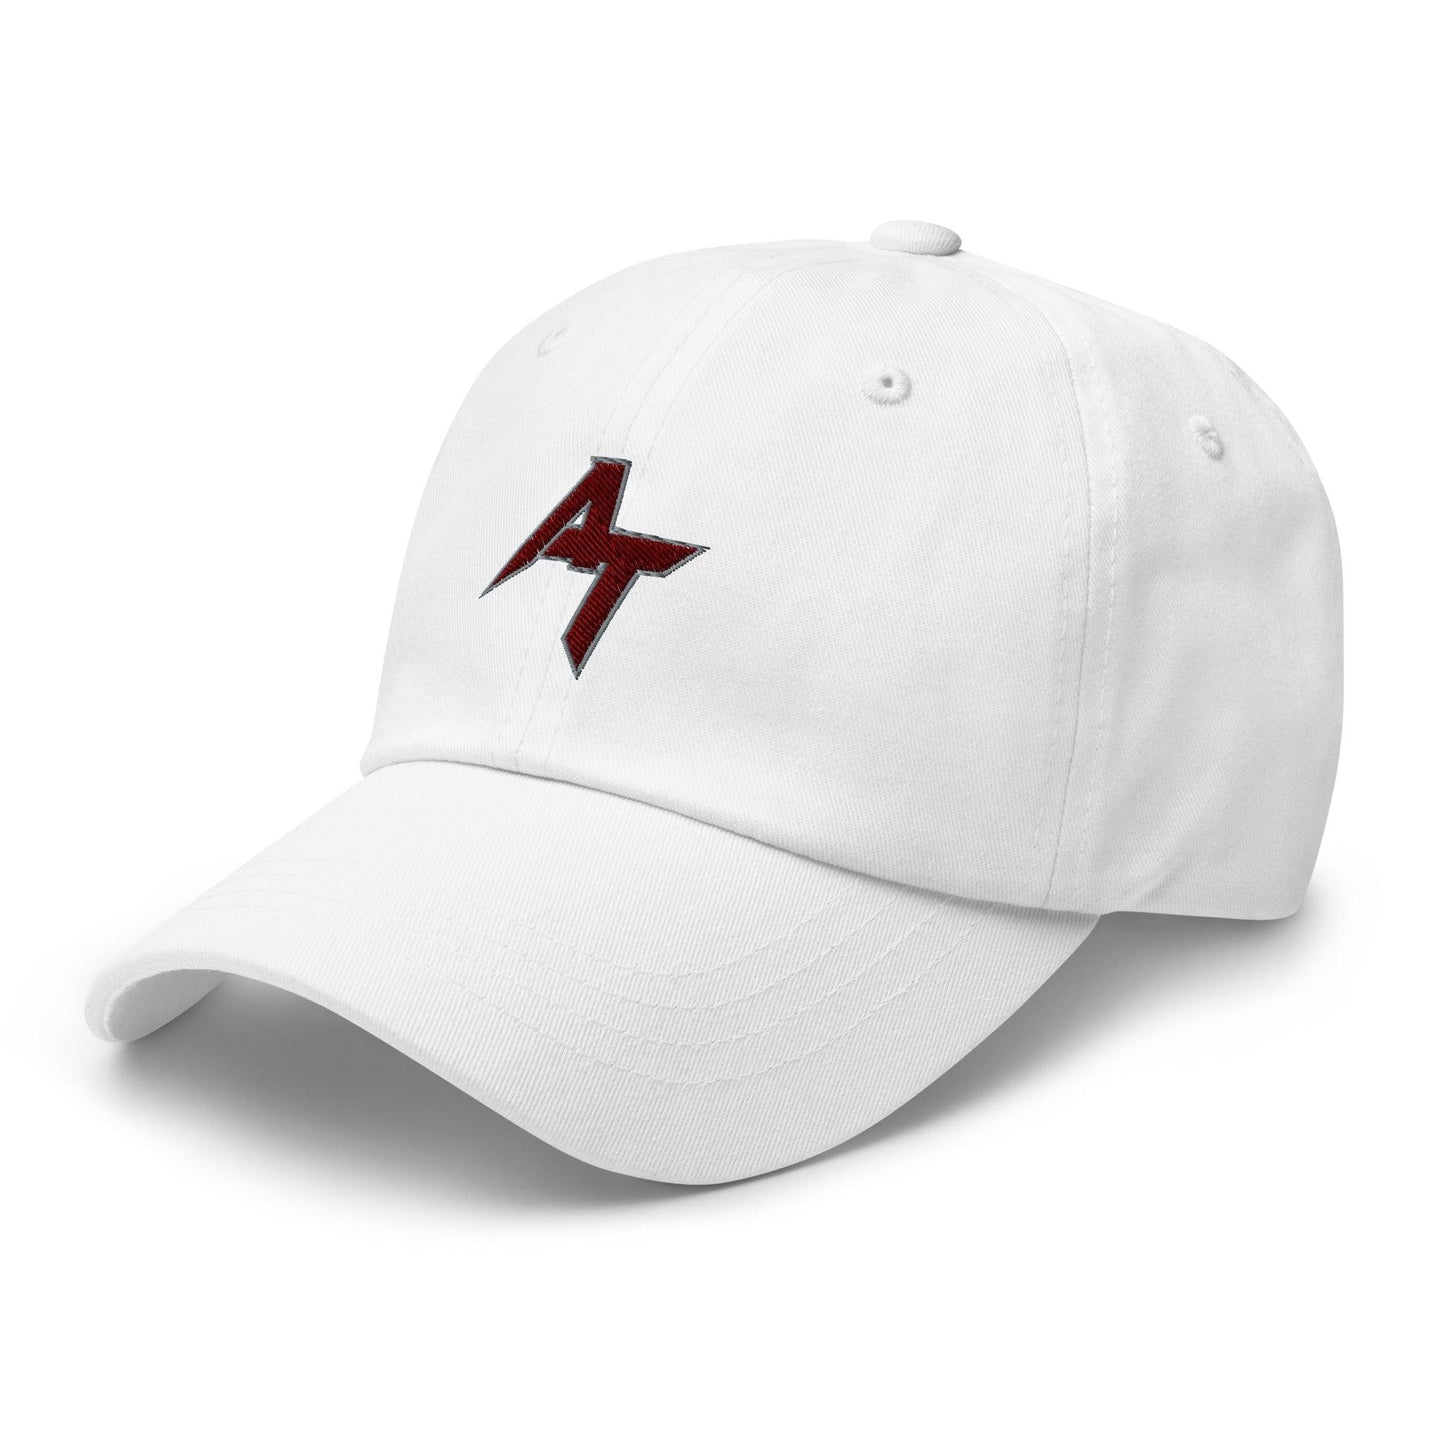 Ayobami Tifase "Elite" hat - Fan Arch